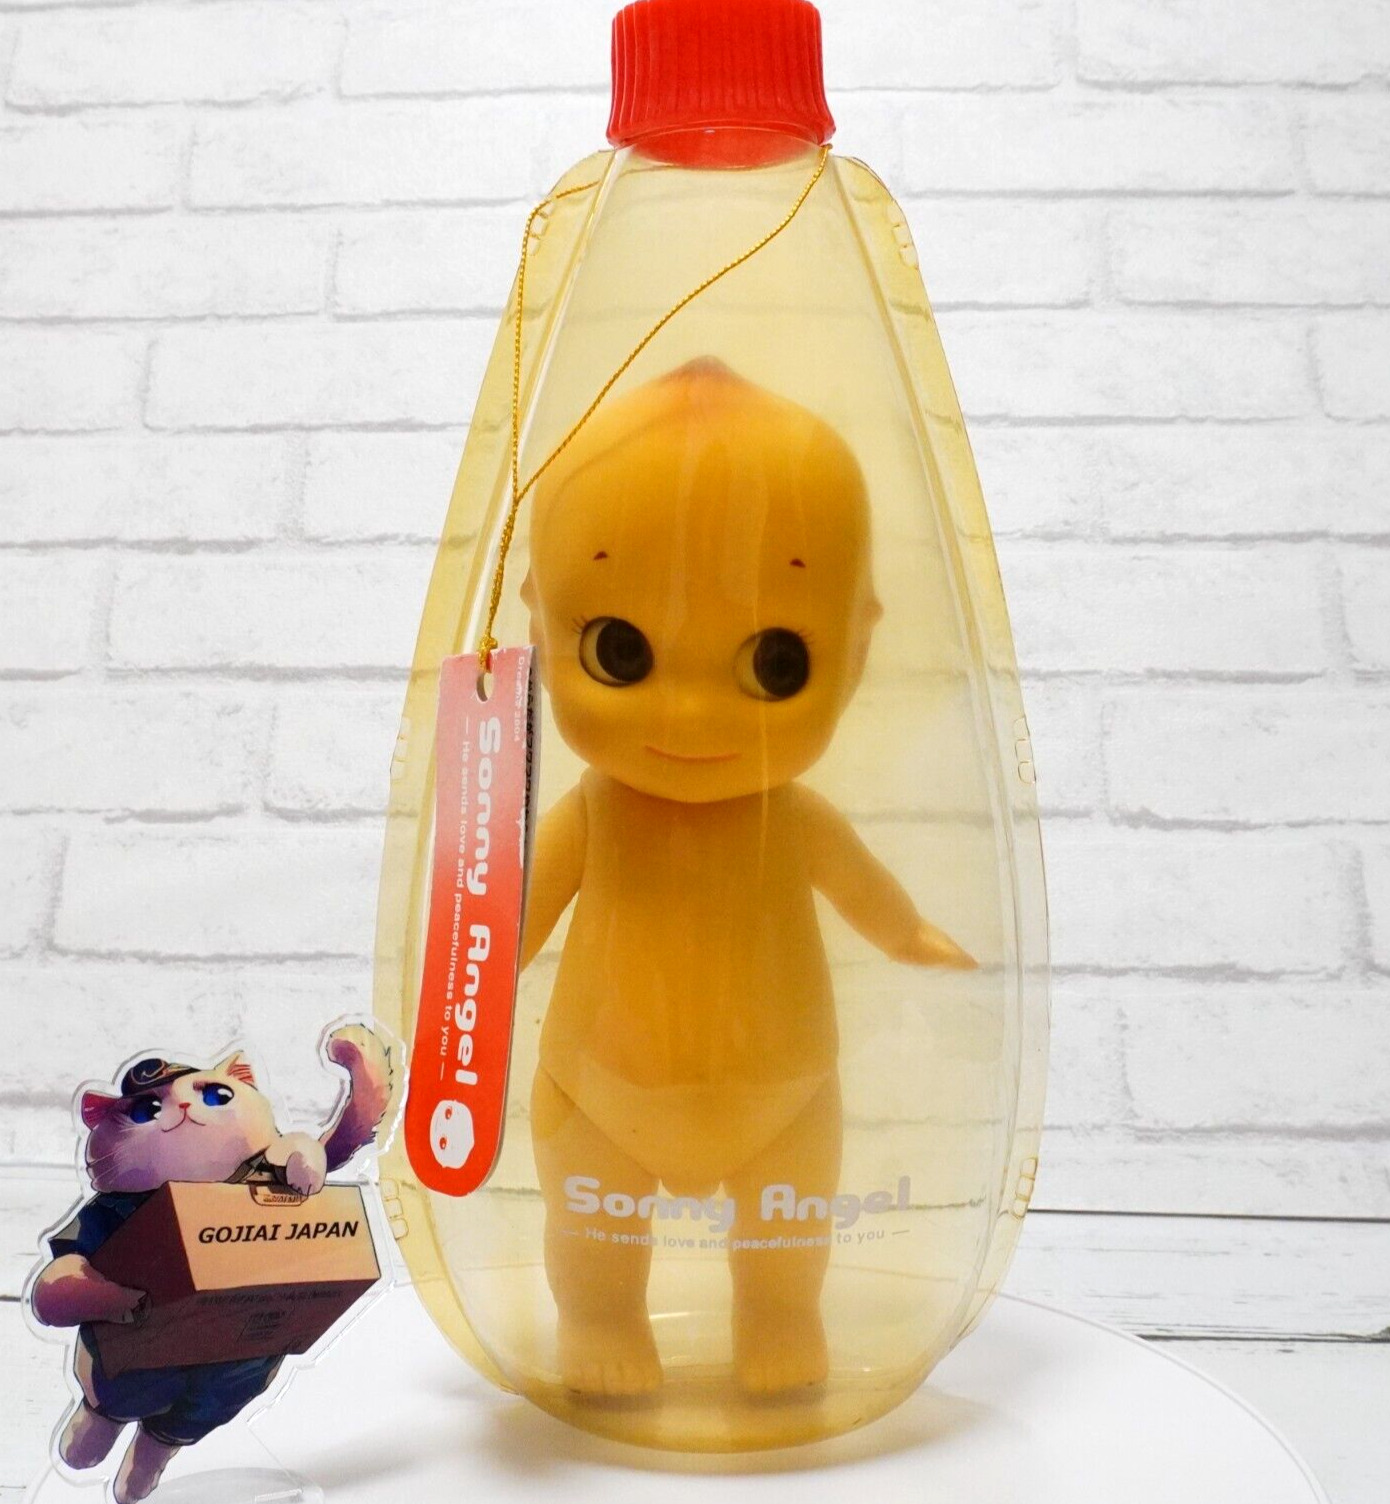 Rare Sonny Angel Kewpie Doll Mayonnaise Bottle Toy Cute Figure 9in